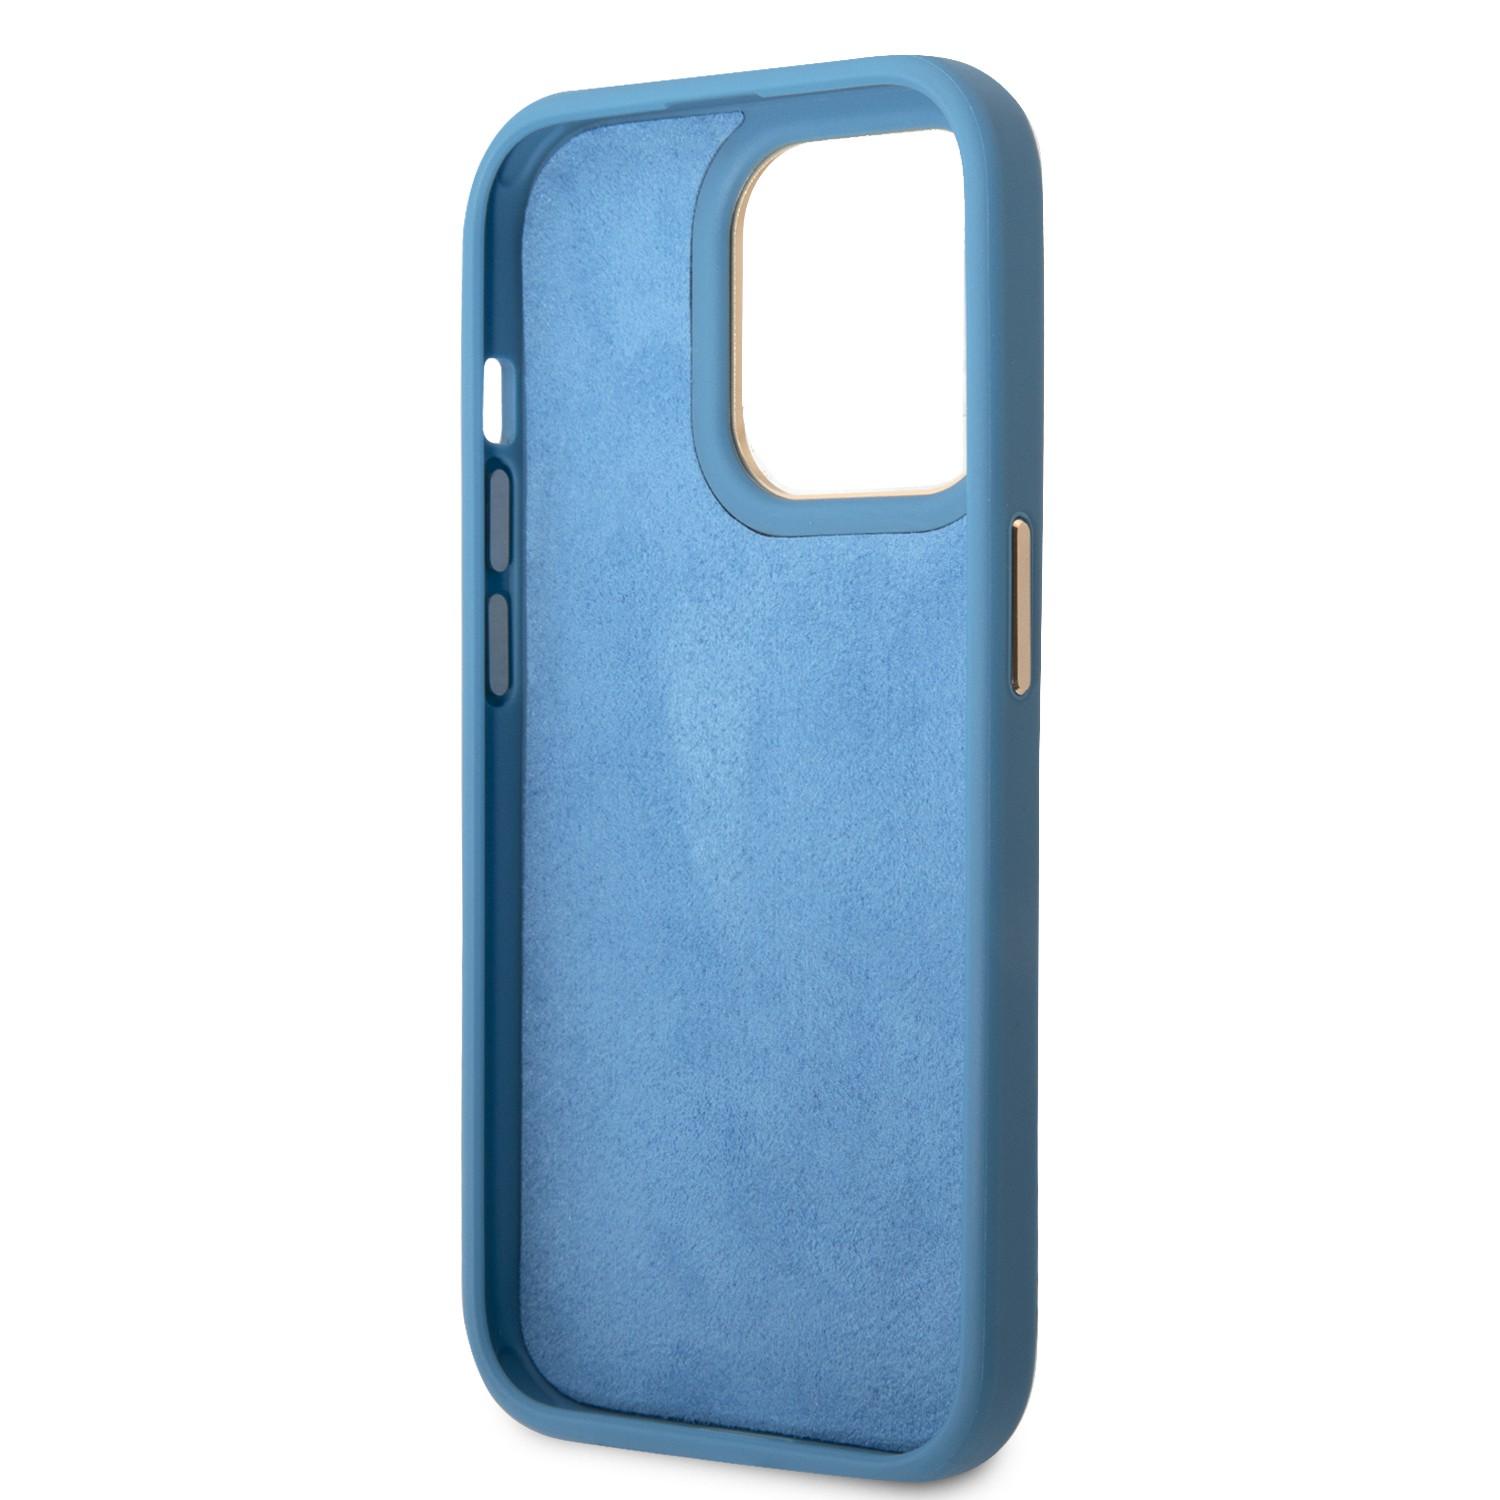 كفر ايفون 14 برو أزرق جيس Guess PC/TPU 4G PU Case With Metal Camera Outline & Buttons For iPhone 14 Pro Blue - cG9zdDoxMzg1MDM4